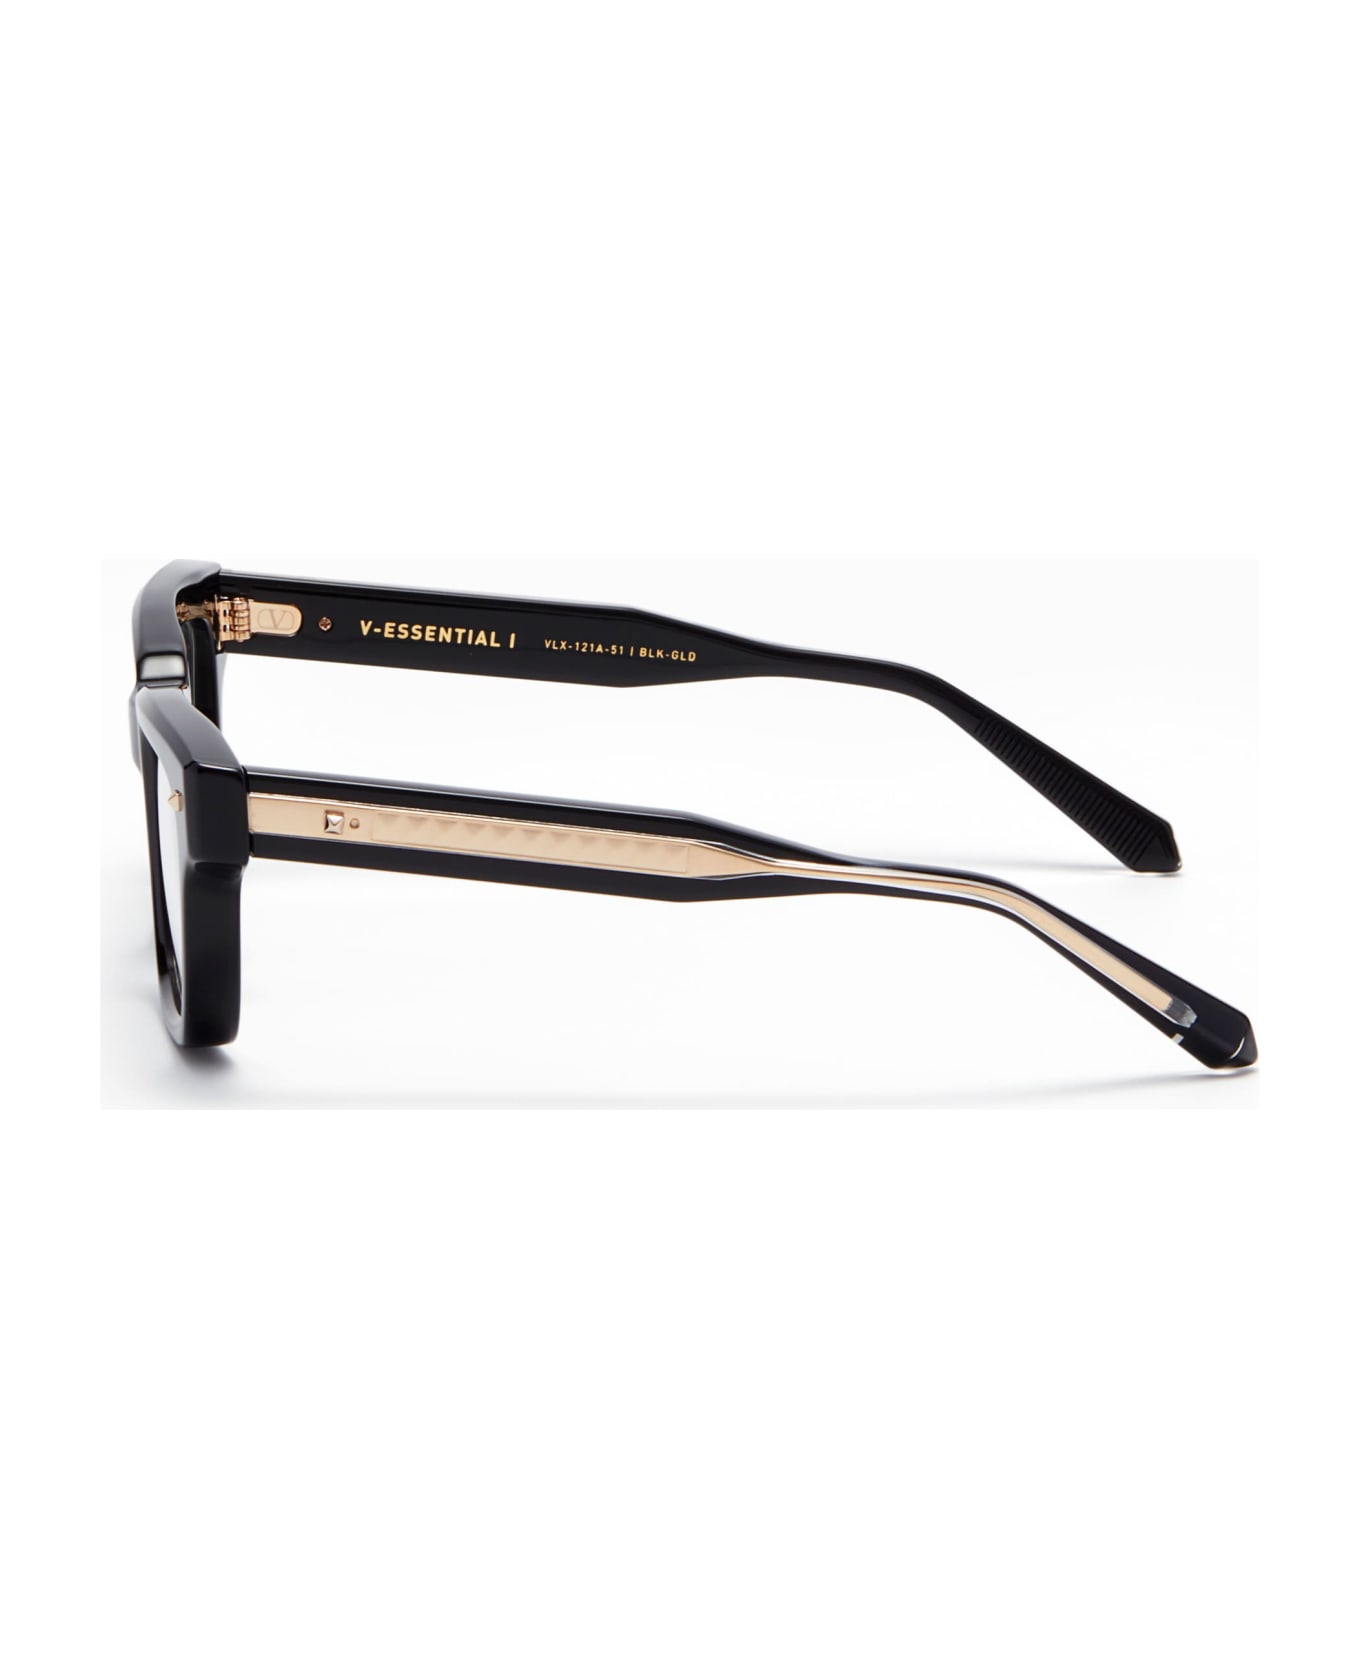 Valentino Eyewear V-essential I - Black Rx Glasses - Black アイウェア